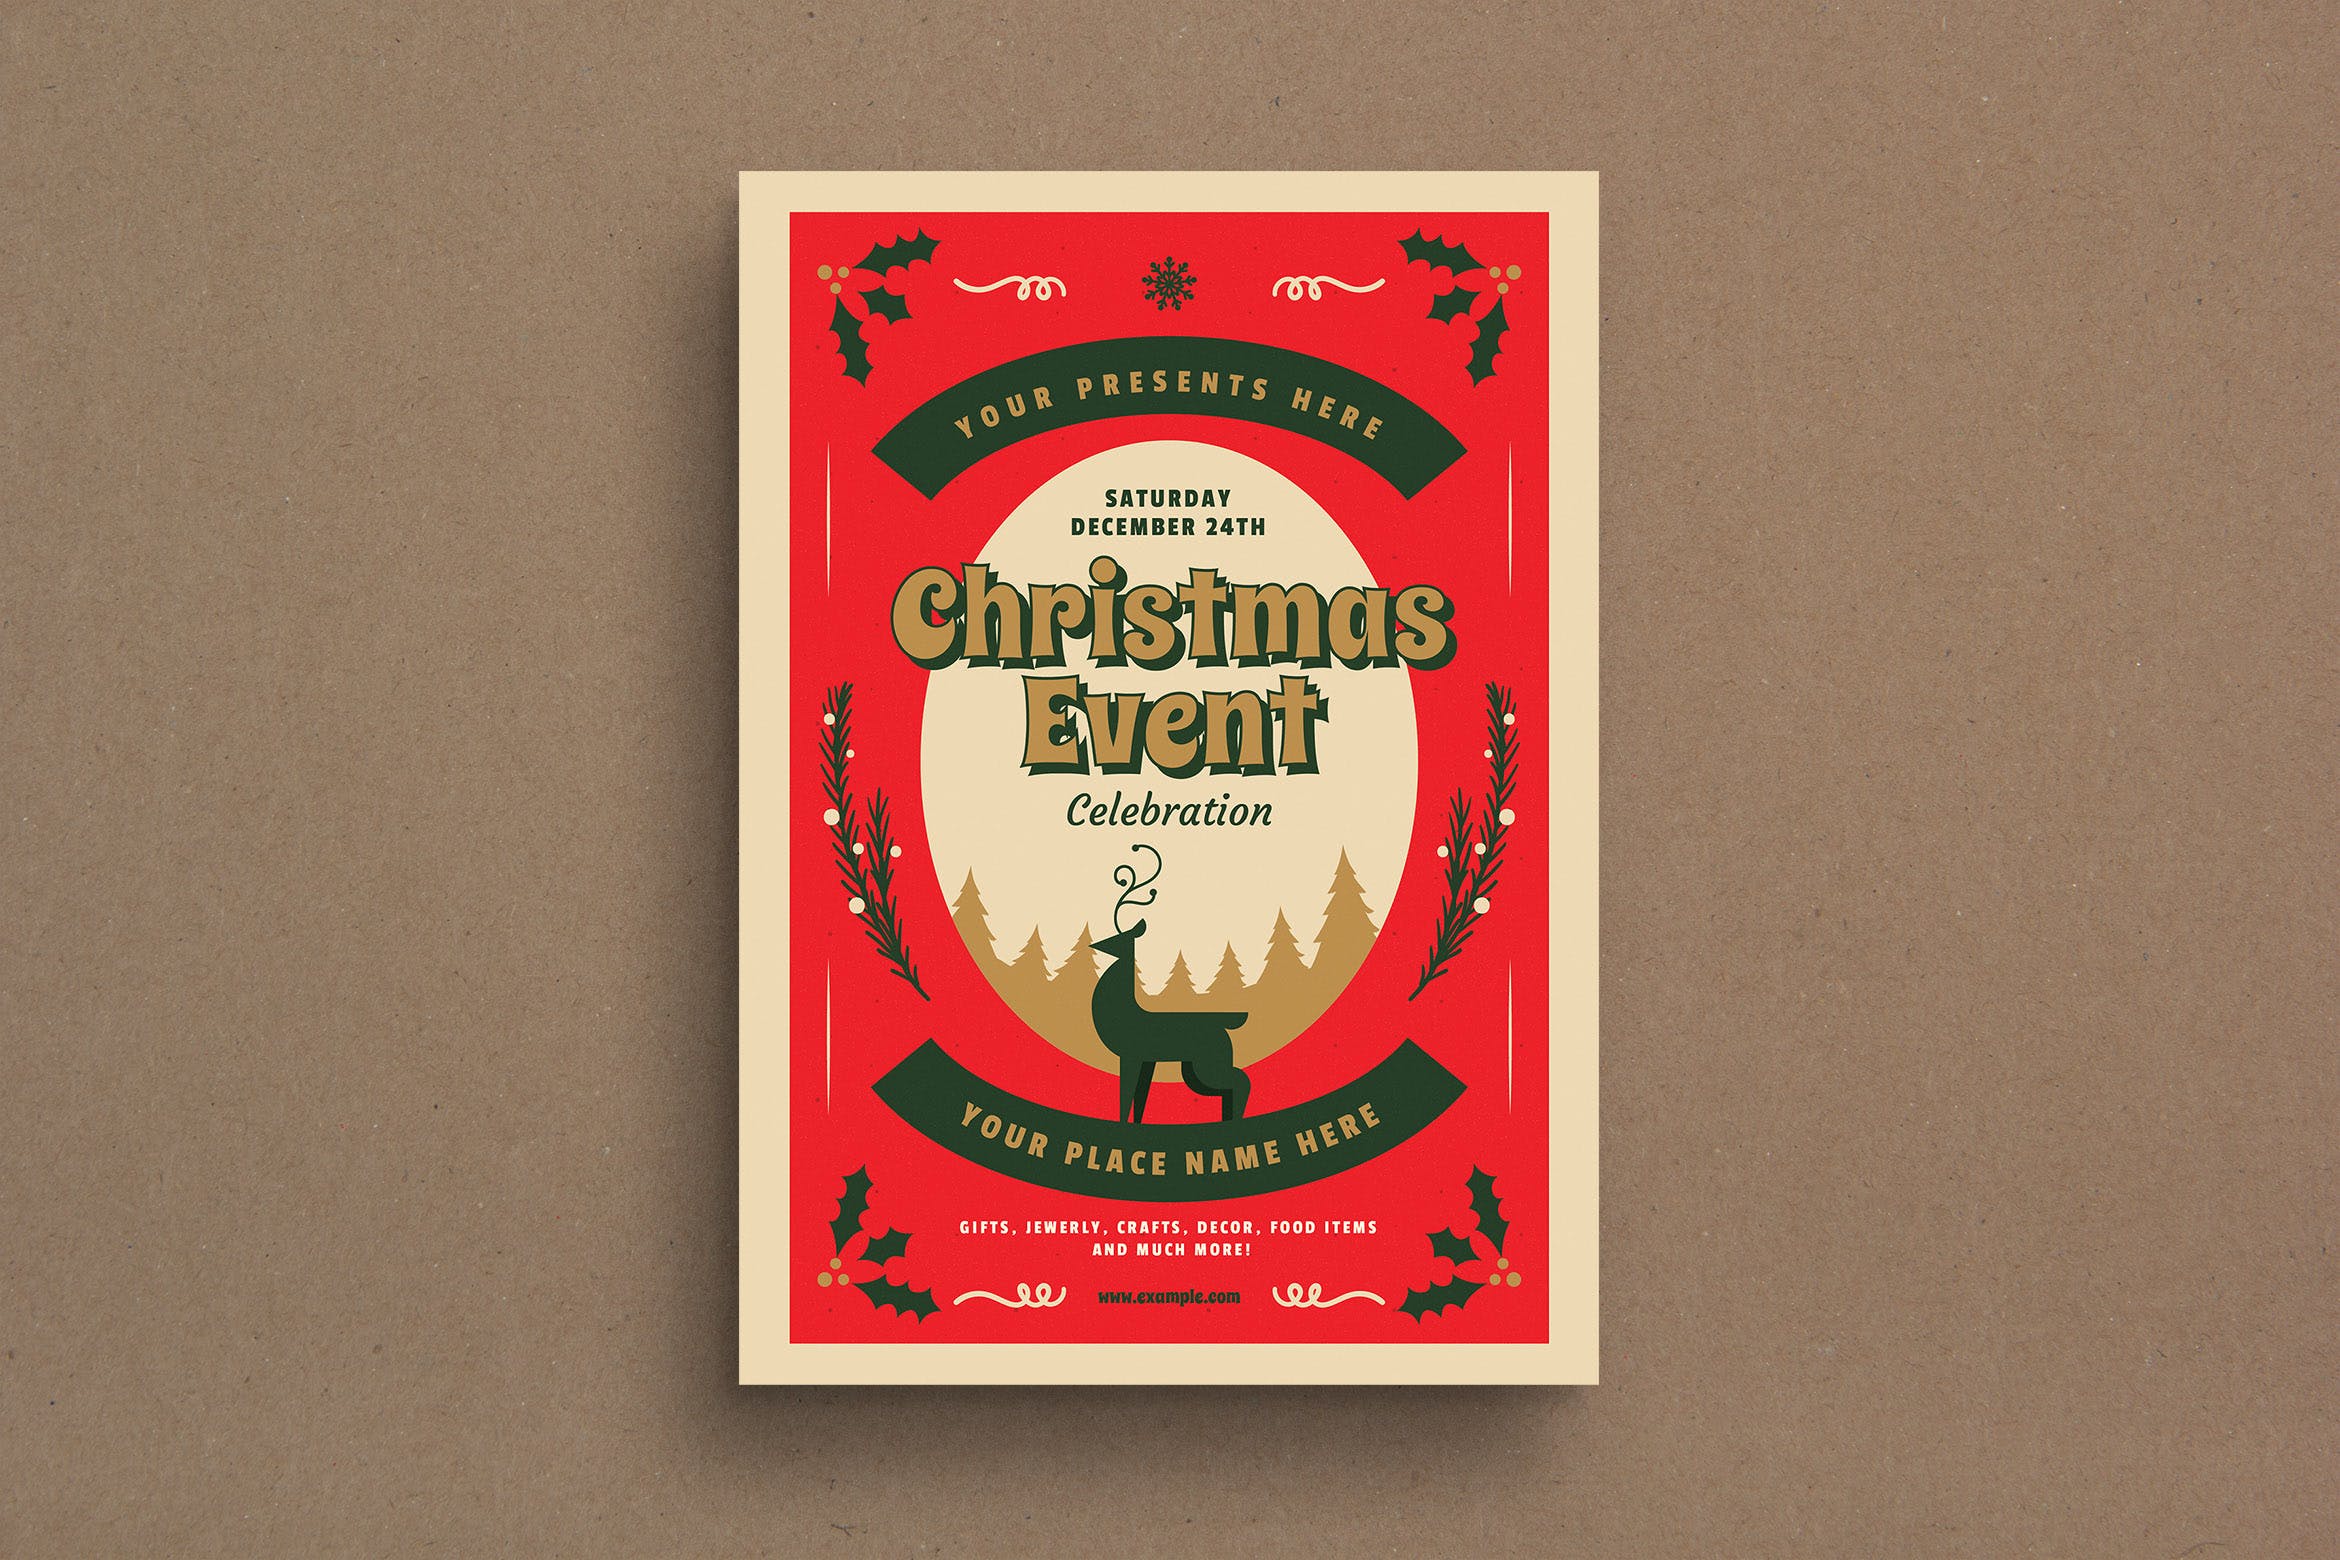 复古设计风格圣诞节活动海报传单模板v1 Retro Christmas Event Flyer插图